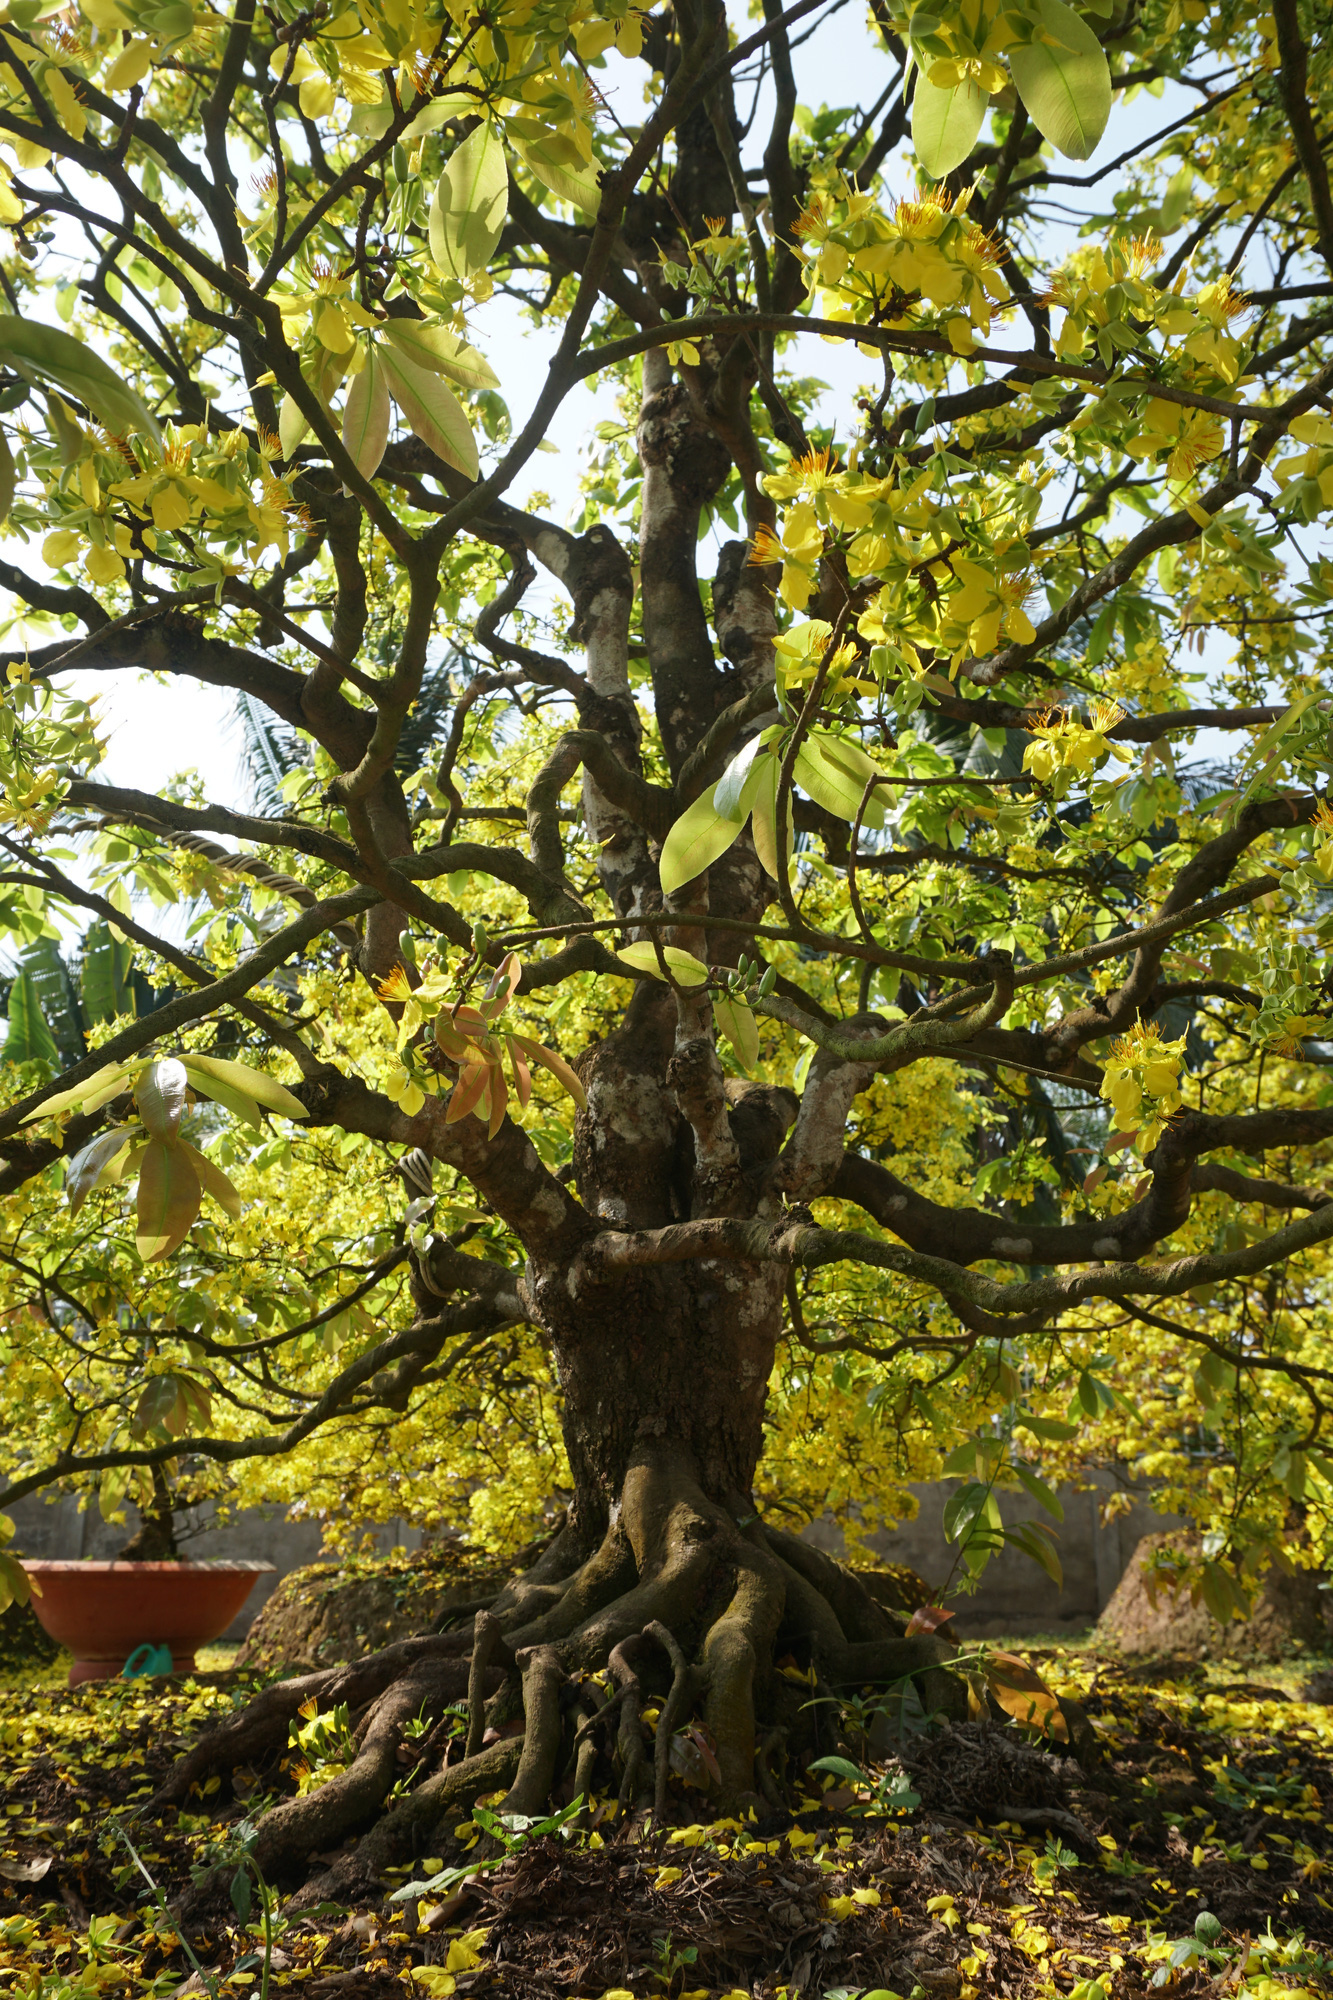 Cây mai cổ: Cây mai cổ là loài cây được coi là trưởng thành và đầy sức mạnh. Với hình dáng và màu sắc độc đáo, cây mai cổ chắc chắn sẽ làm say đắm lòng người. Hãy xem hình ảnh đẹp của cây mai cổ để cùng khám phá vẻ đẹp ấn tượng của loài cây này.